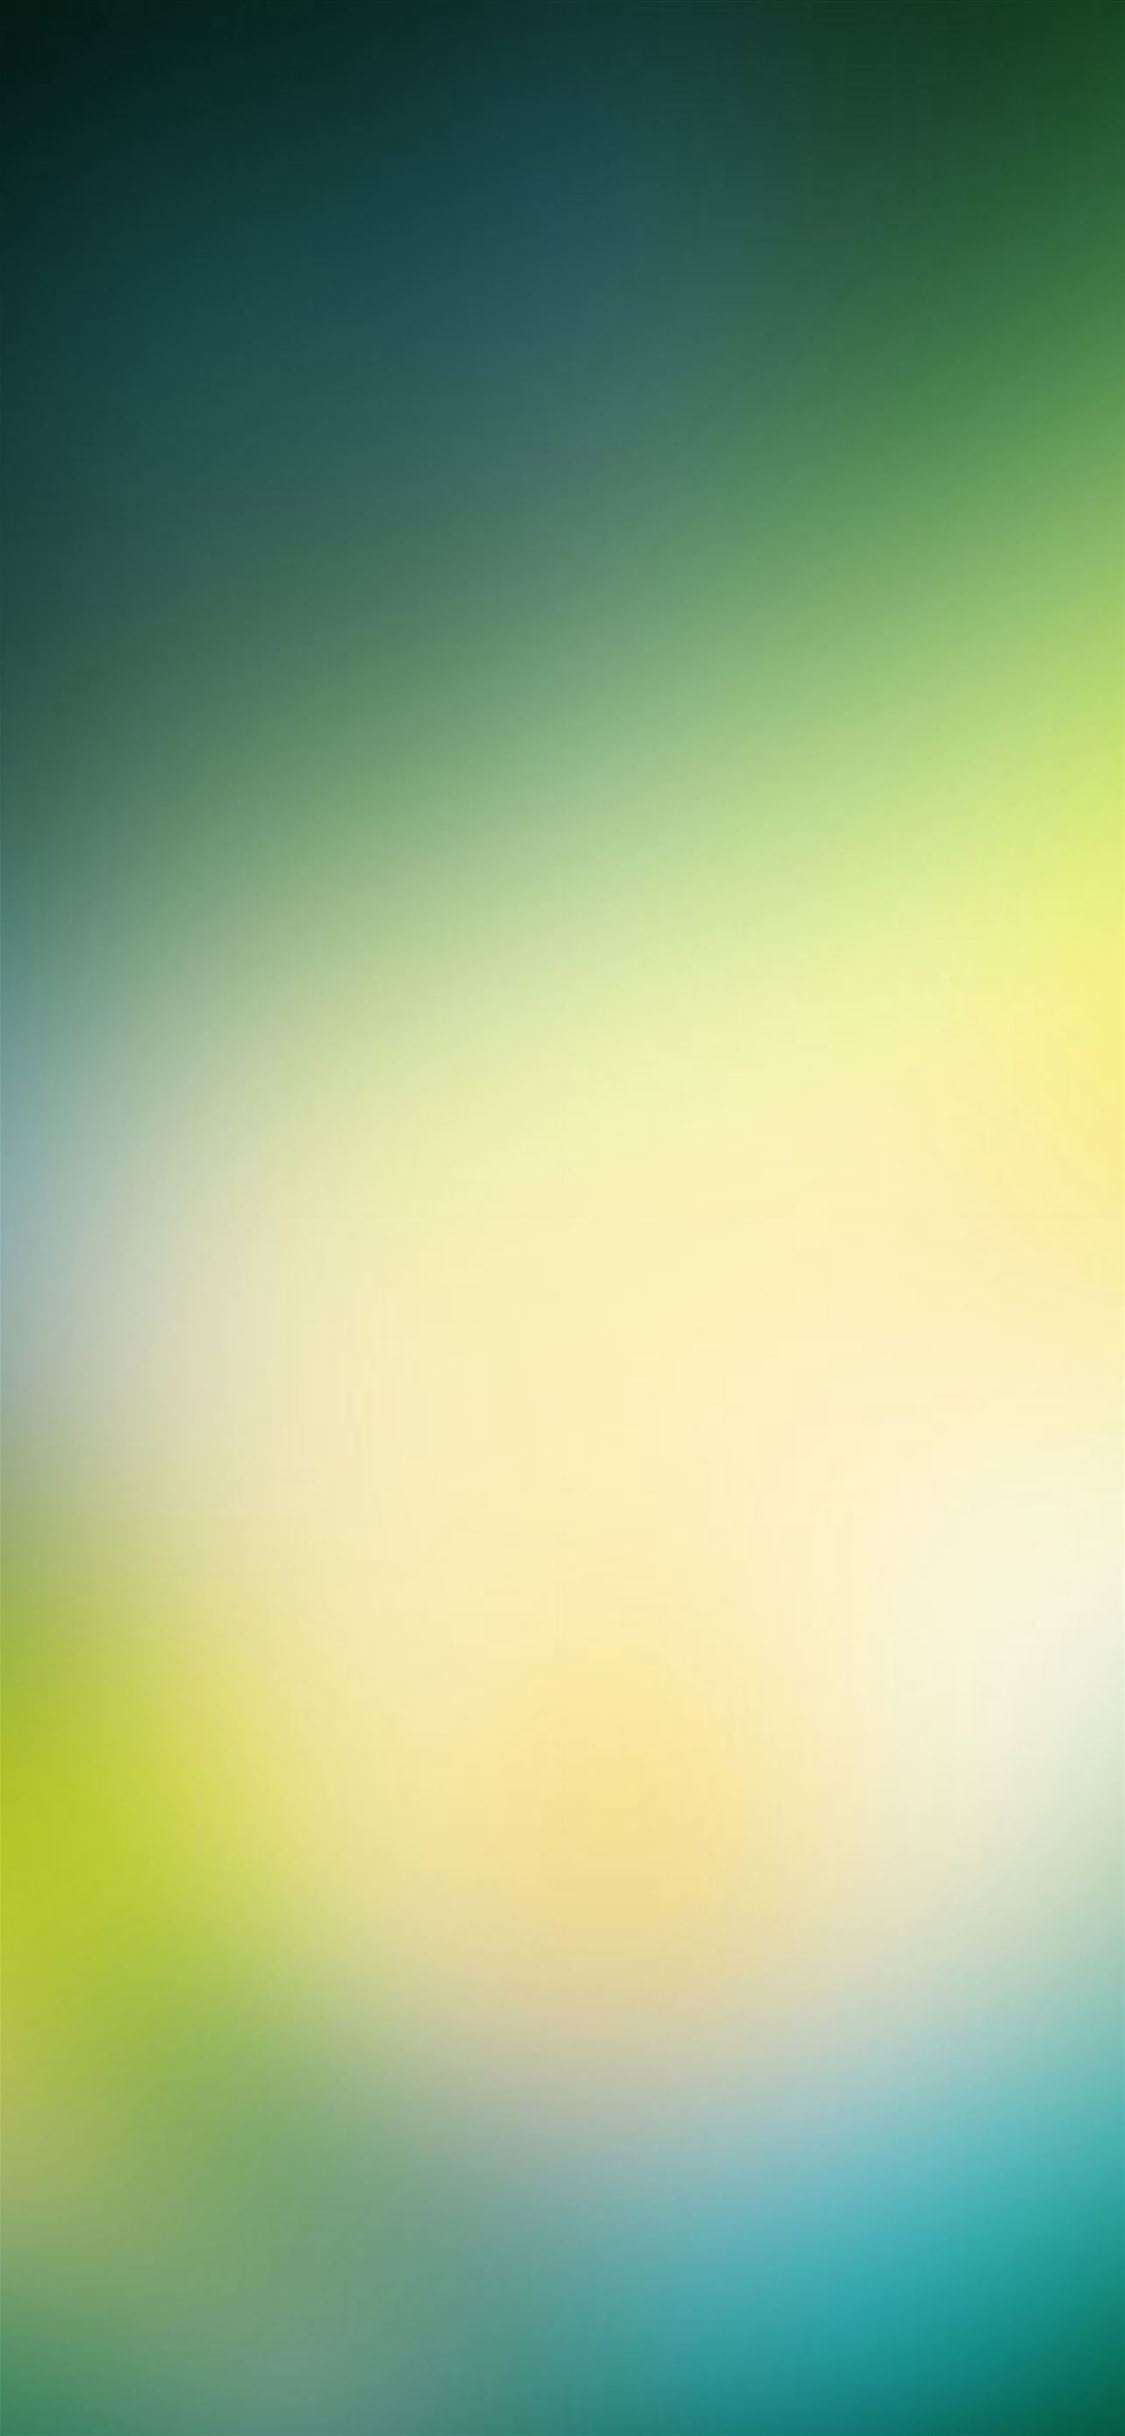 Green Os Background Gradation Blur iPhone wallpaper 